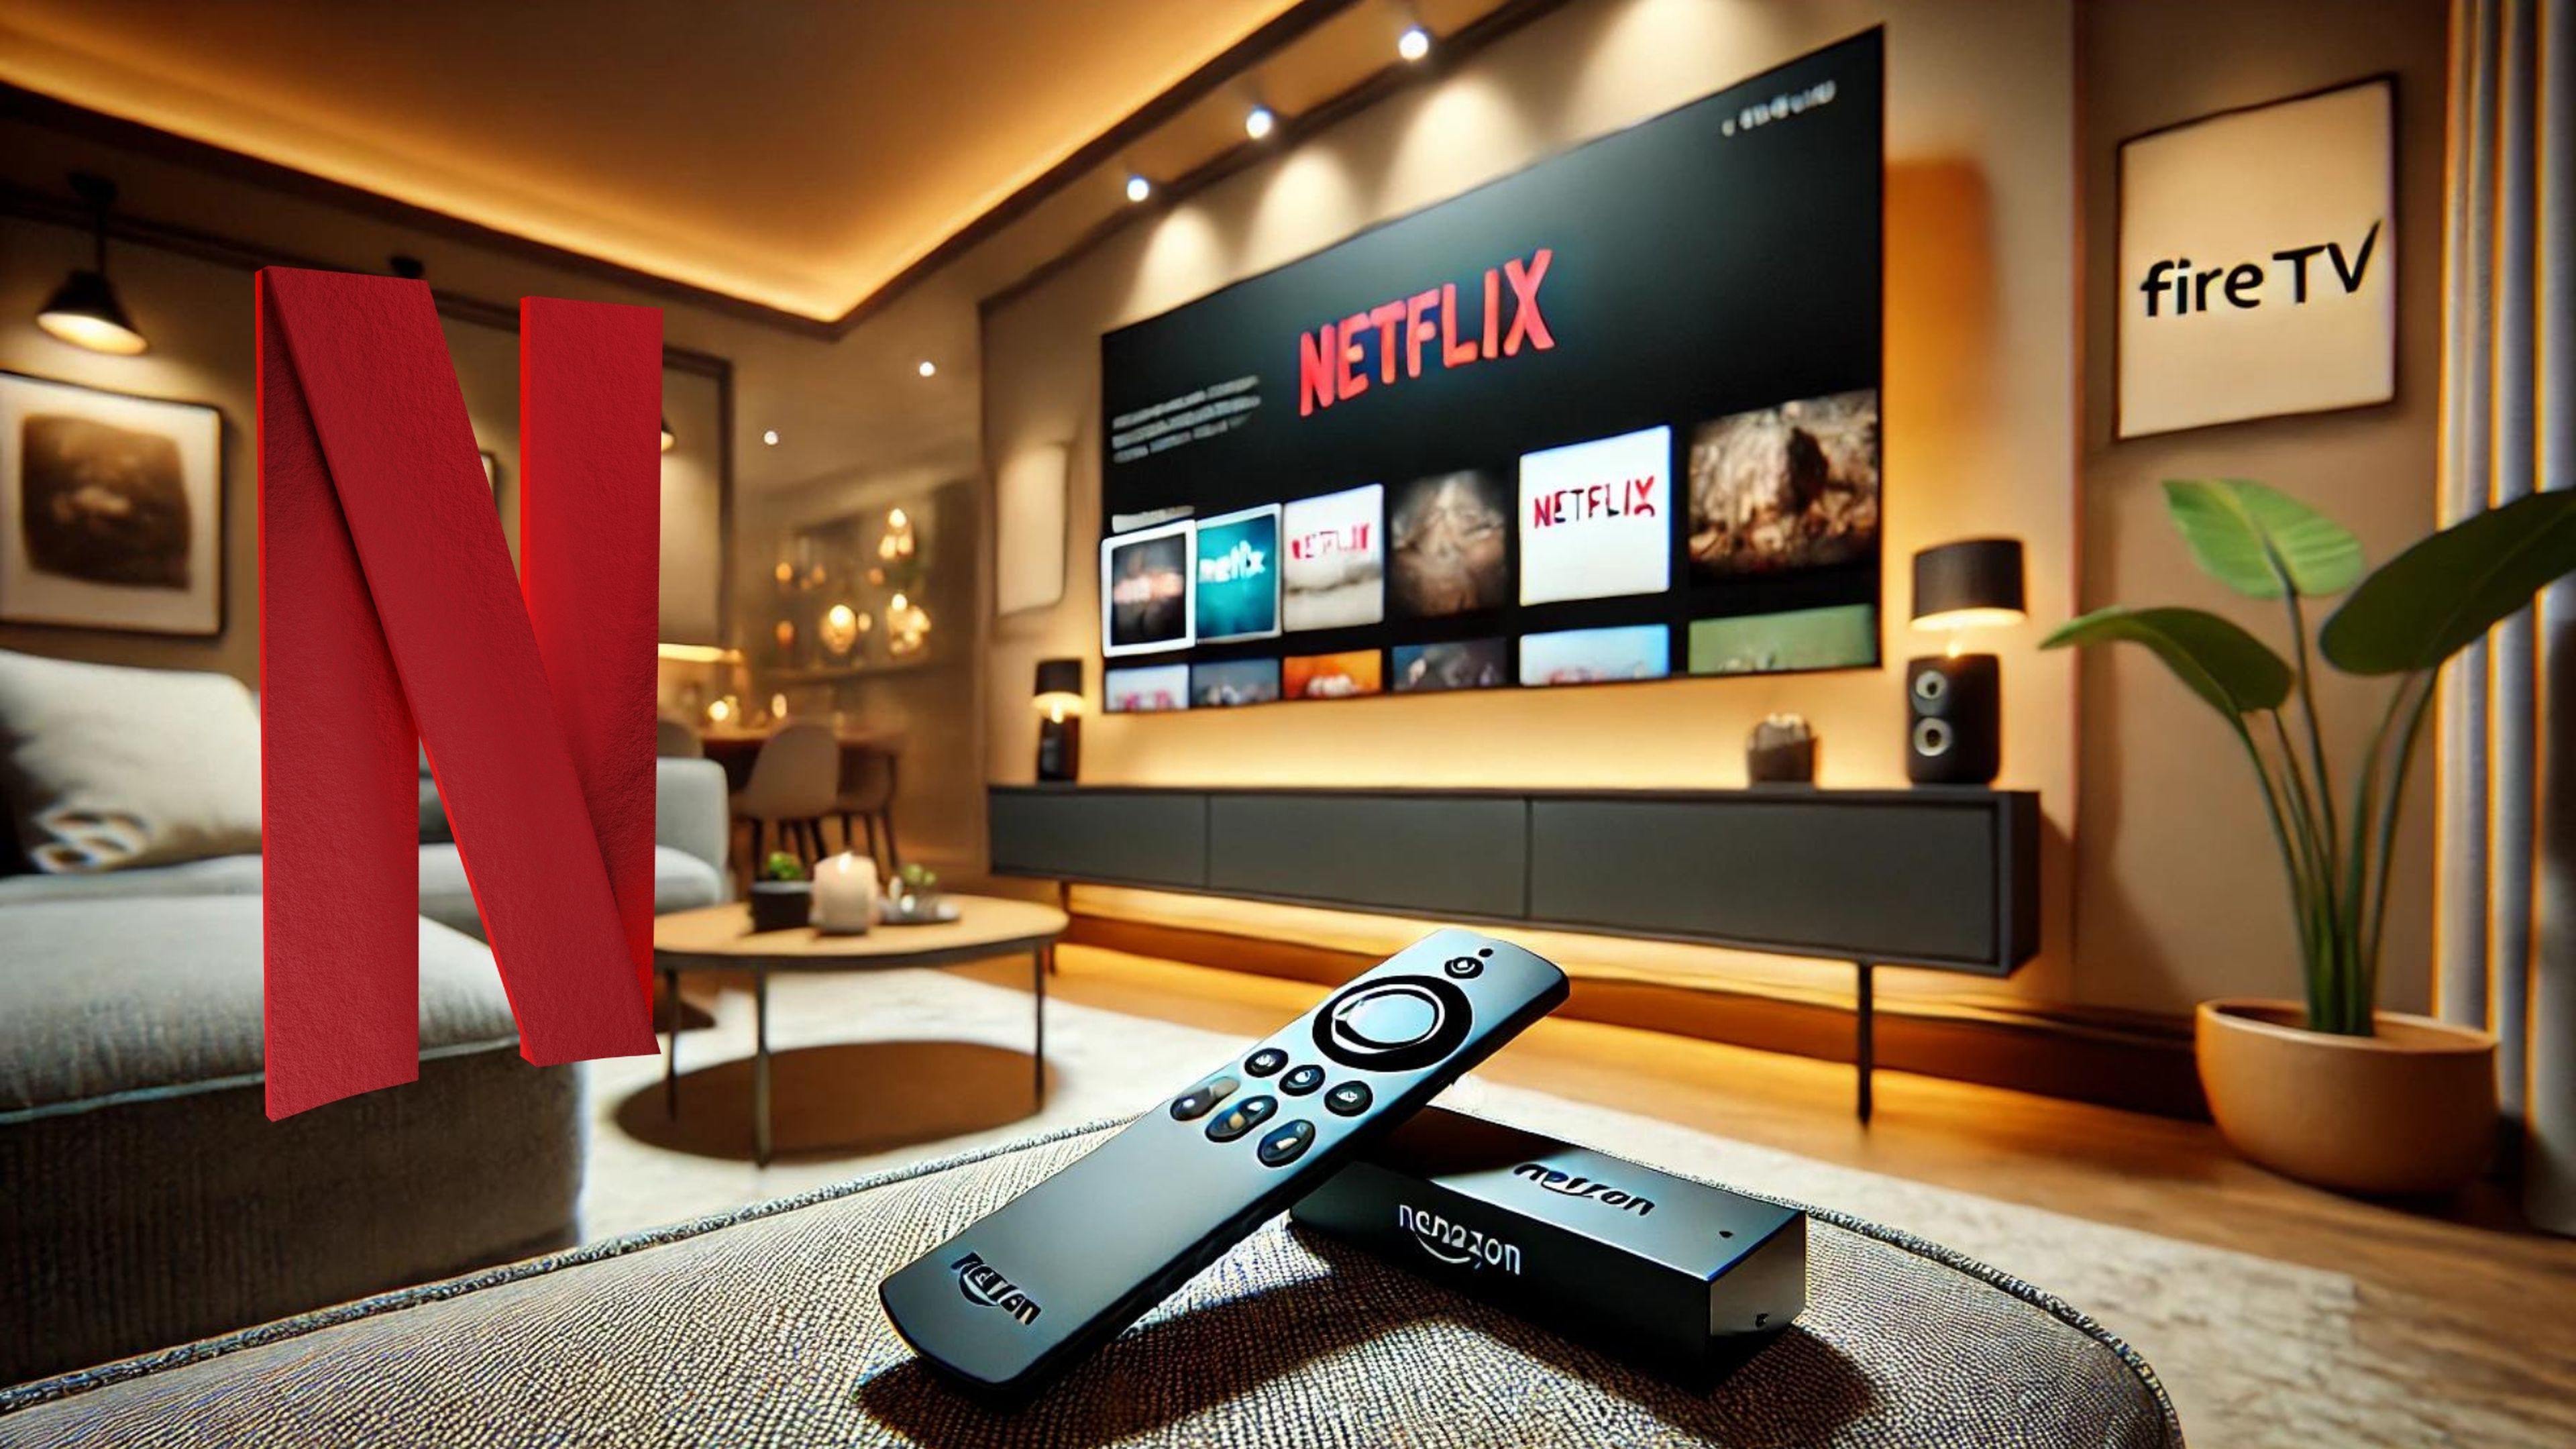 Instalar Netflix en el Fire TV o directamente en el Smart TV: ¿qué es mejor?